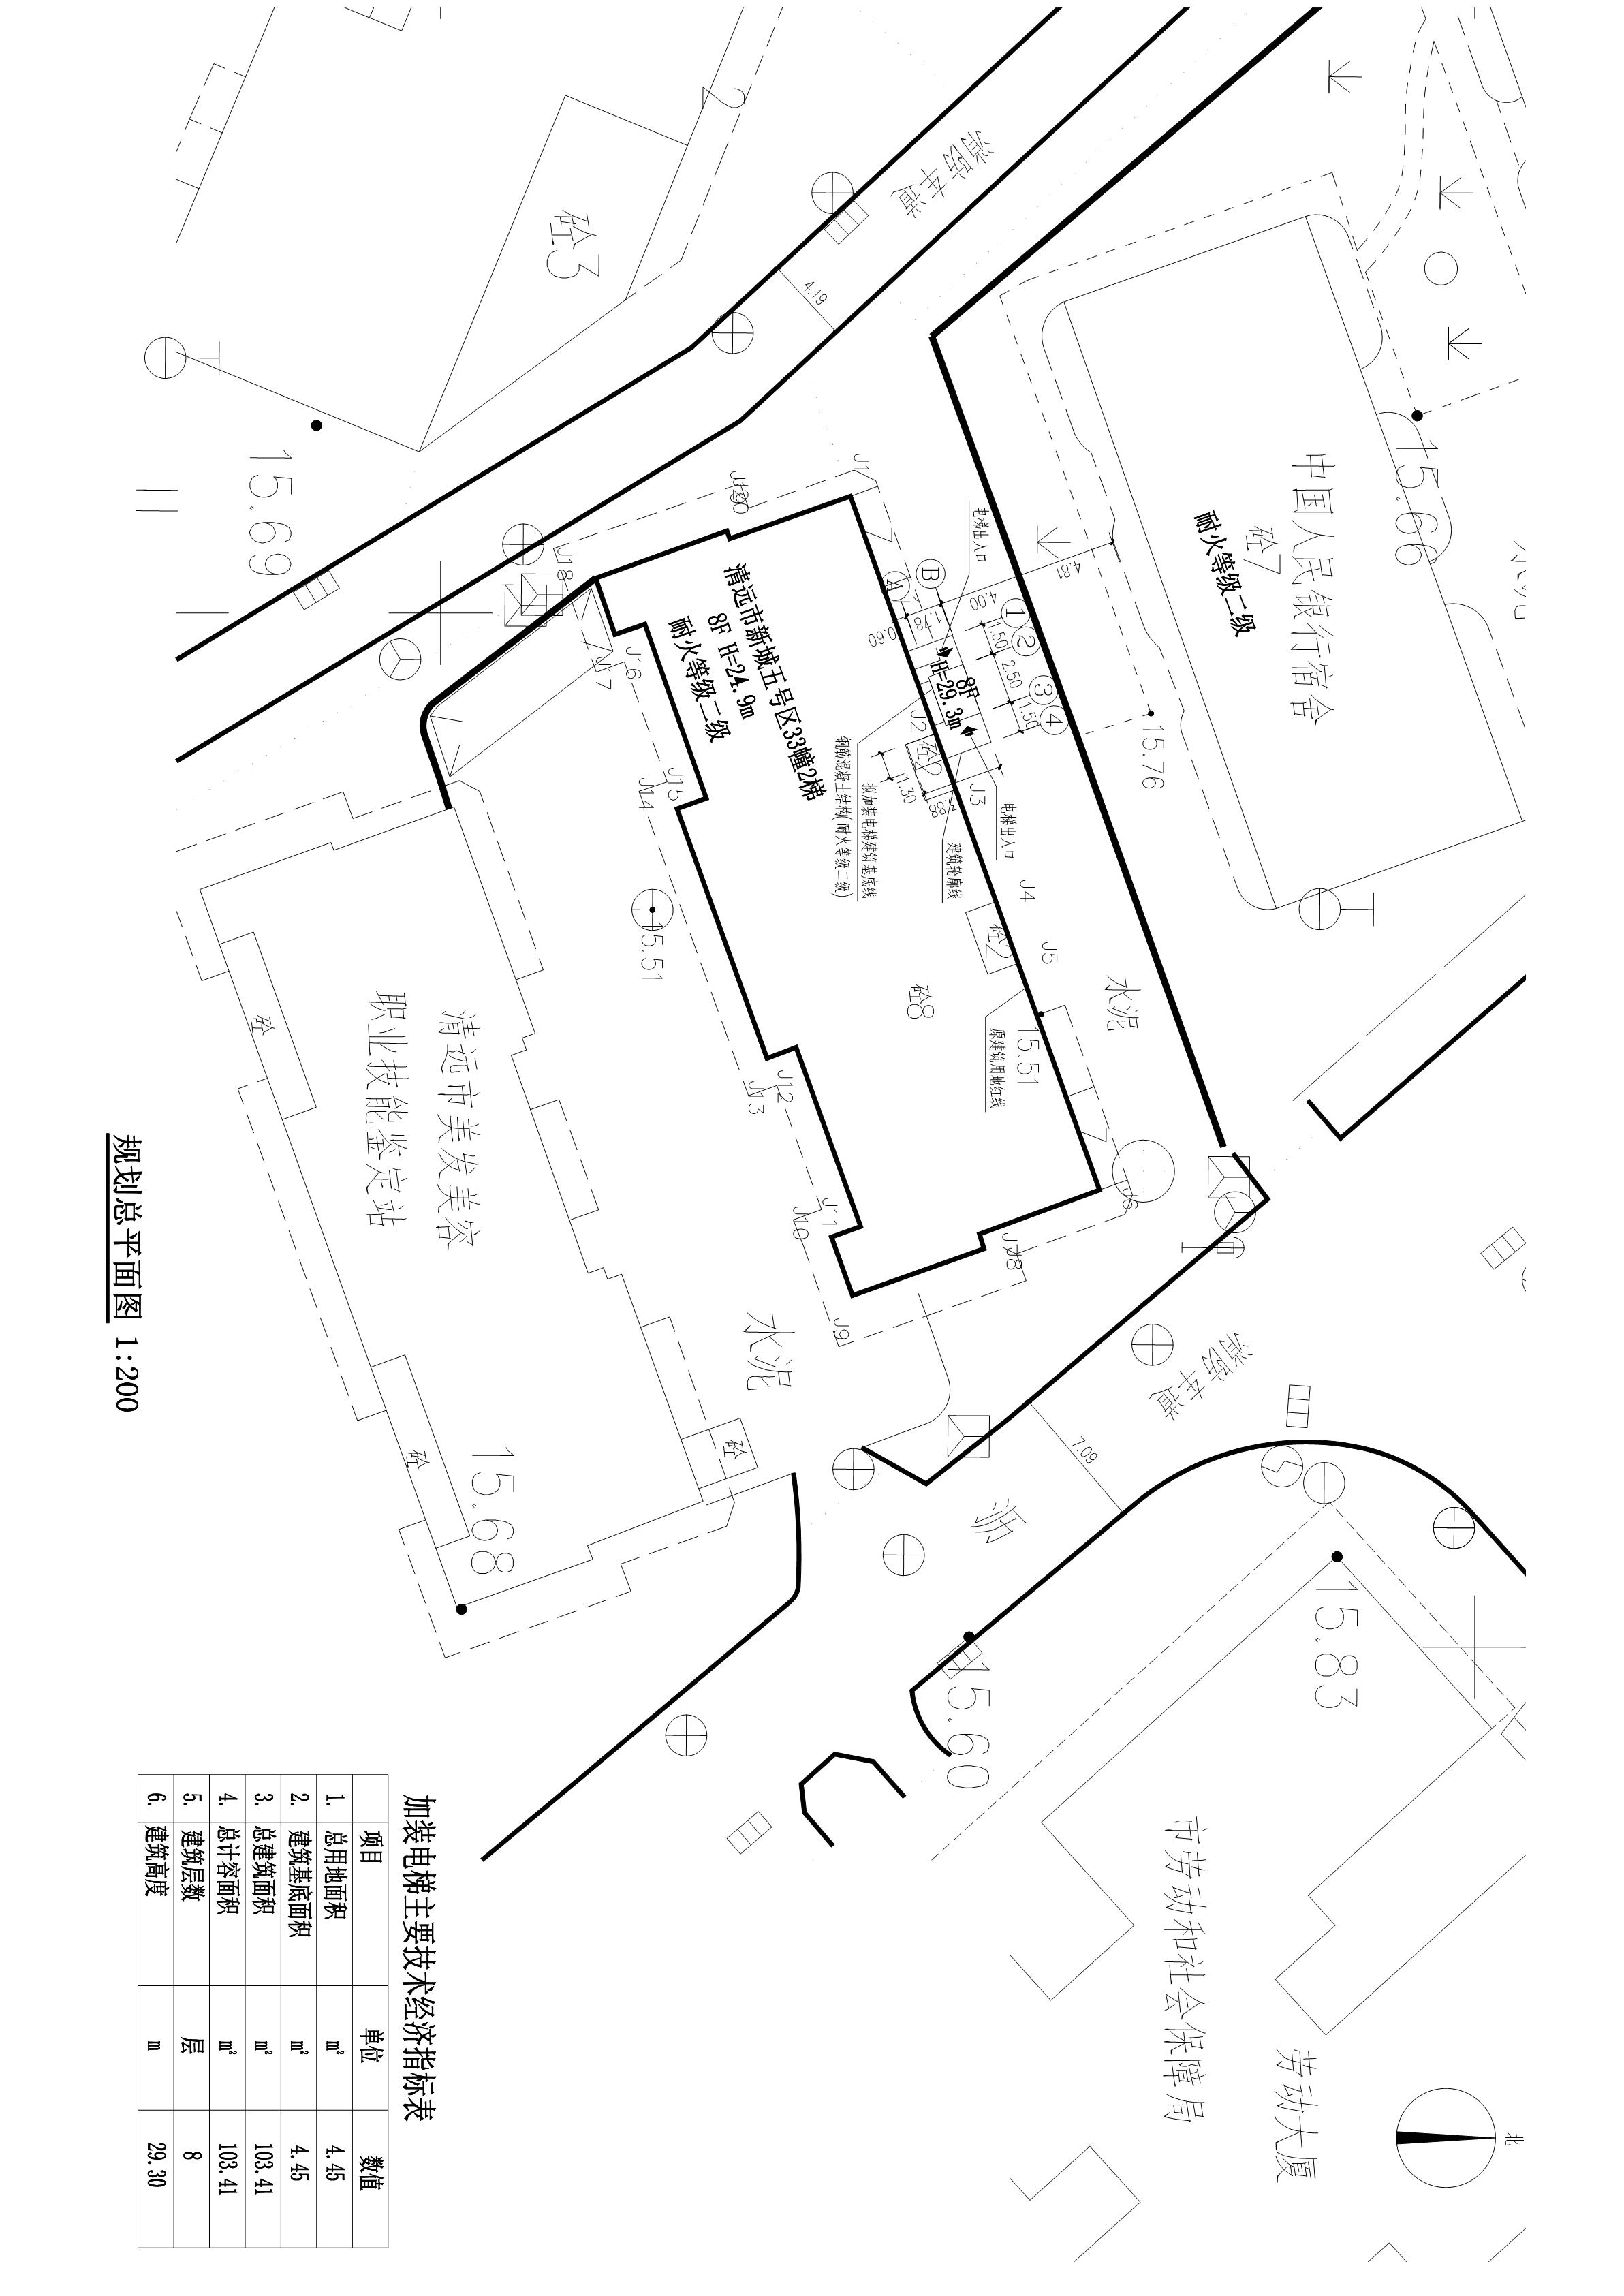 清远市新城五号区33幢2梯加装电梯总平面图 22.04.15_t3-Model_1.jpg